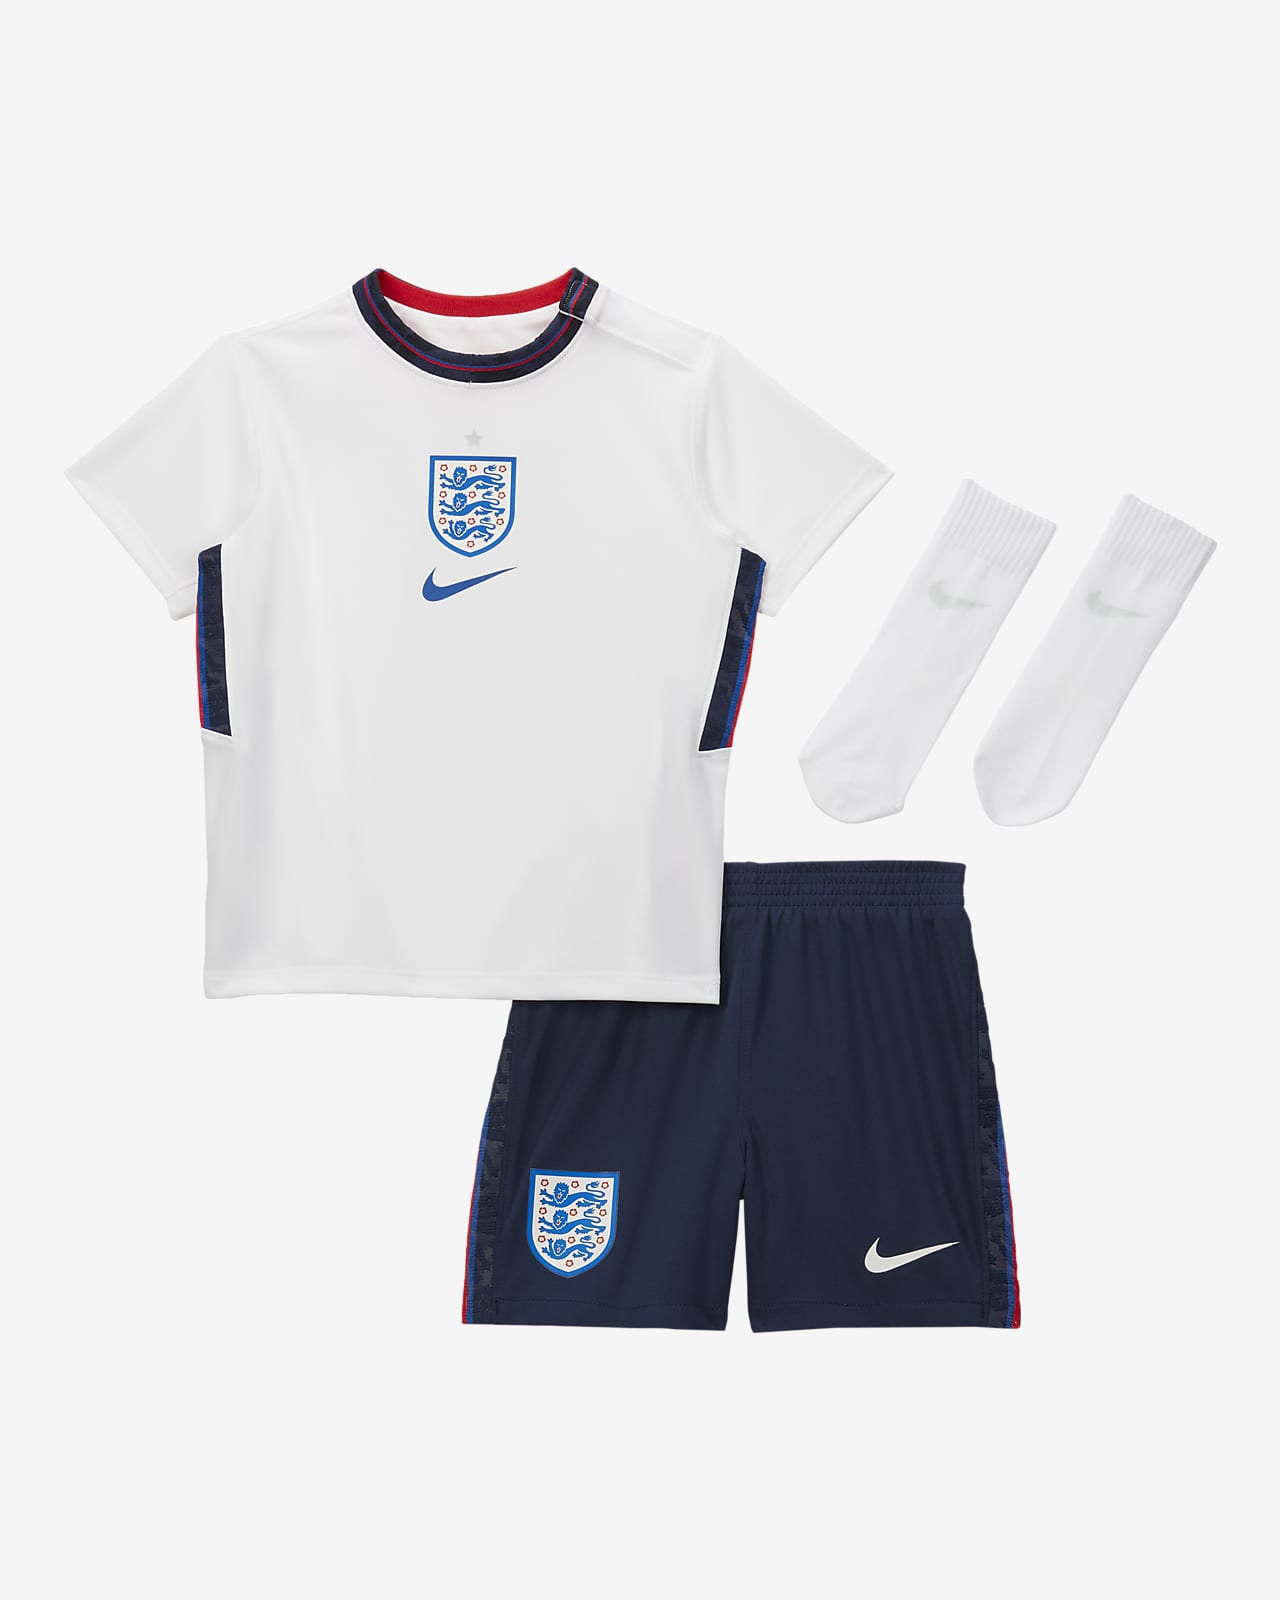 england 2020 home kit